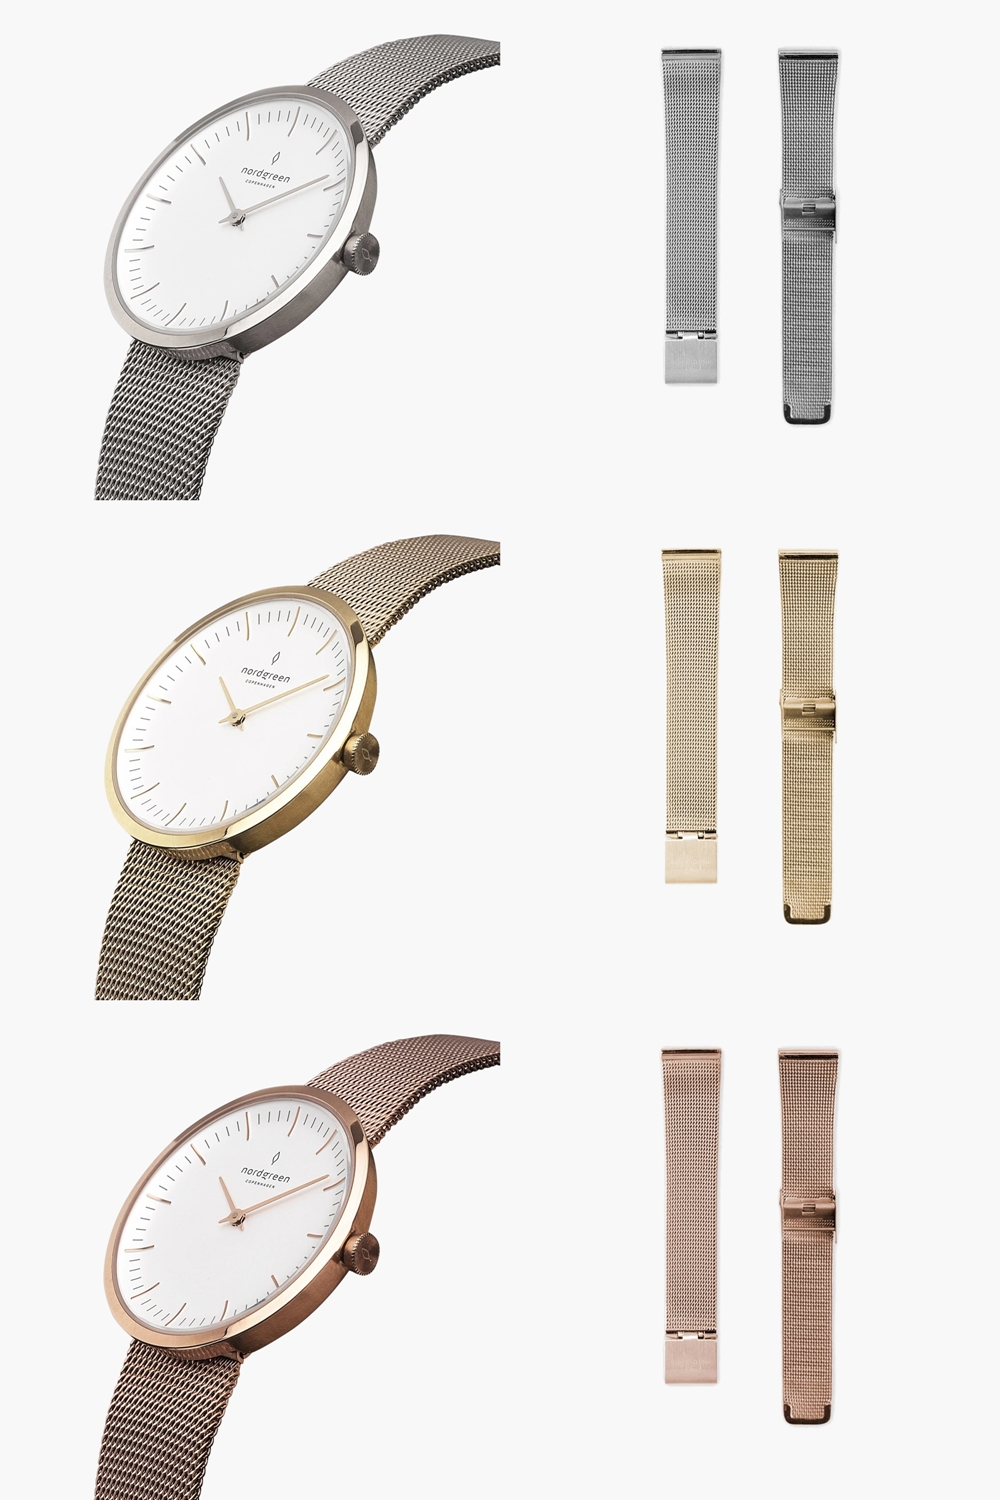 【なります】 Nordgreen[ノードグリーン]Unika 北欧デザイン腕時計 マットメタルダイヤル シルバー 5リンクブレス28mm